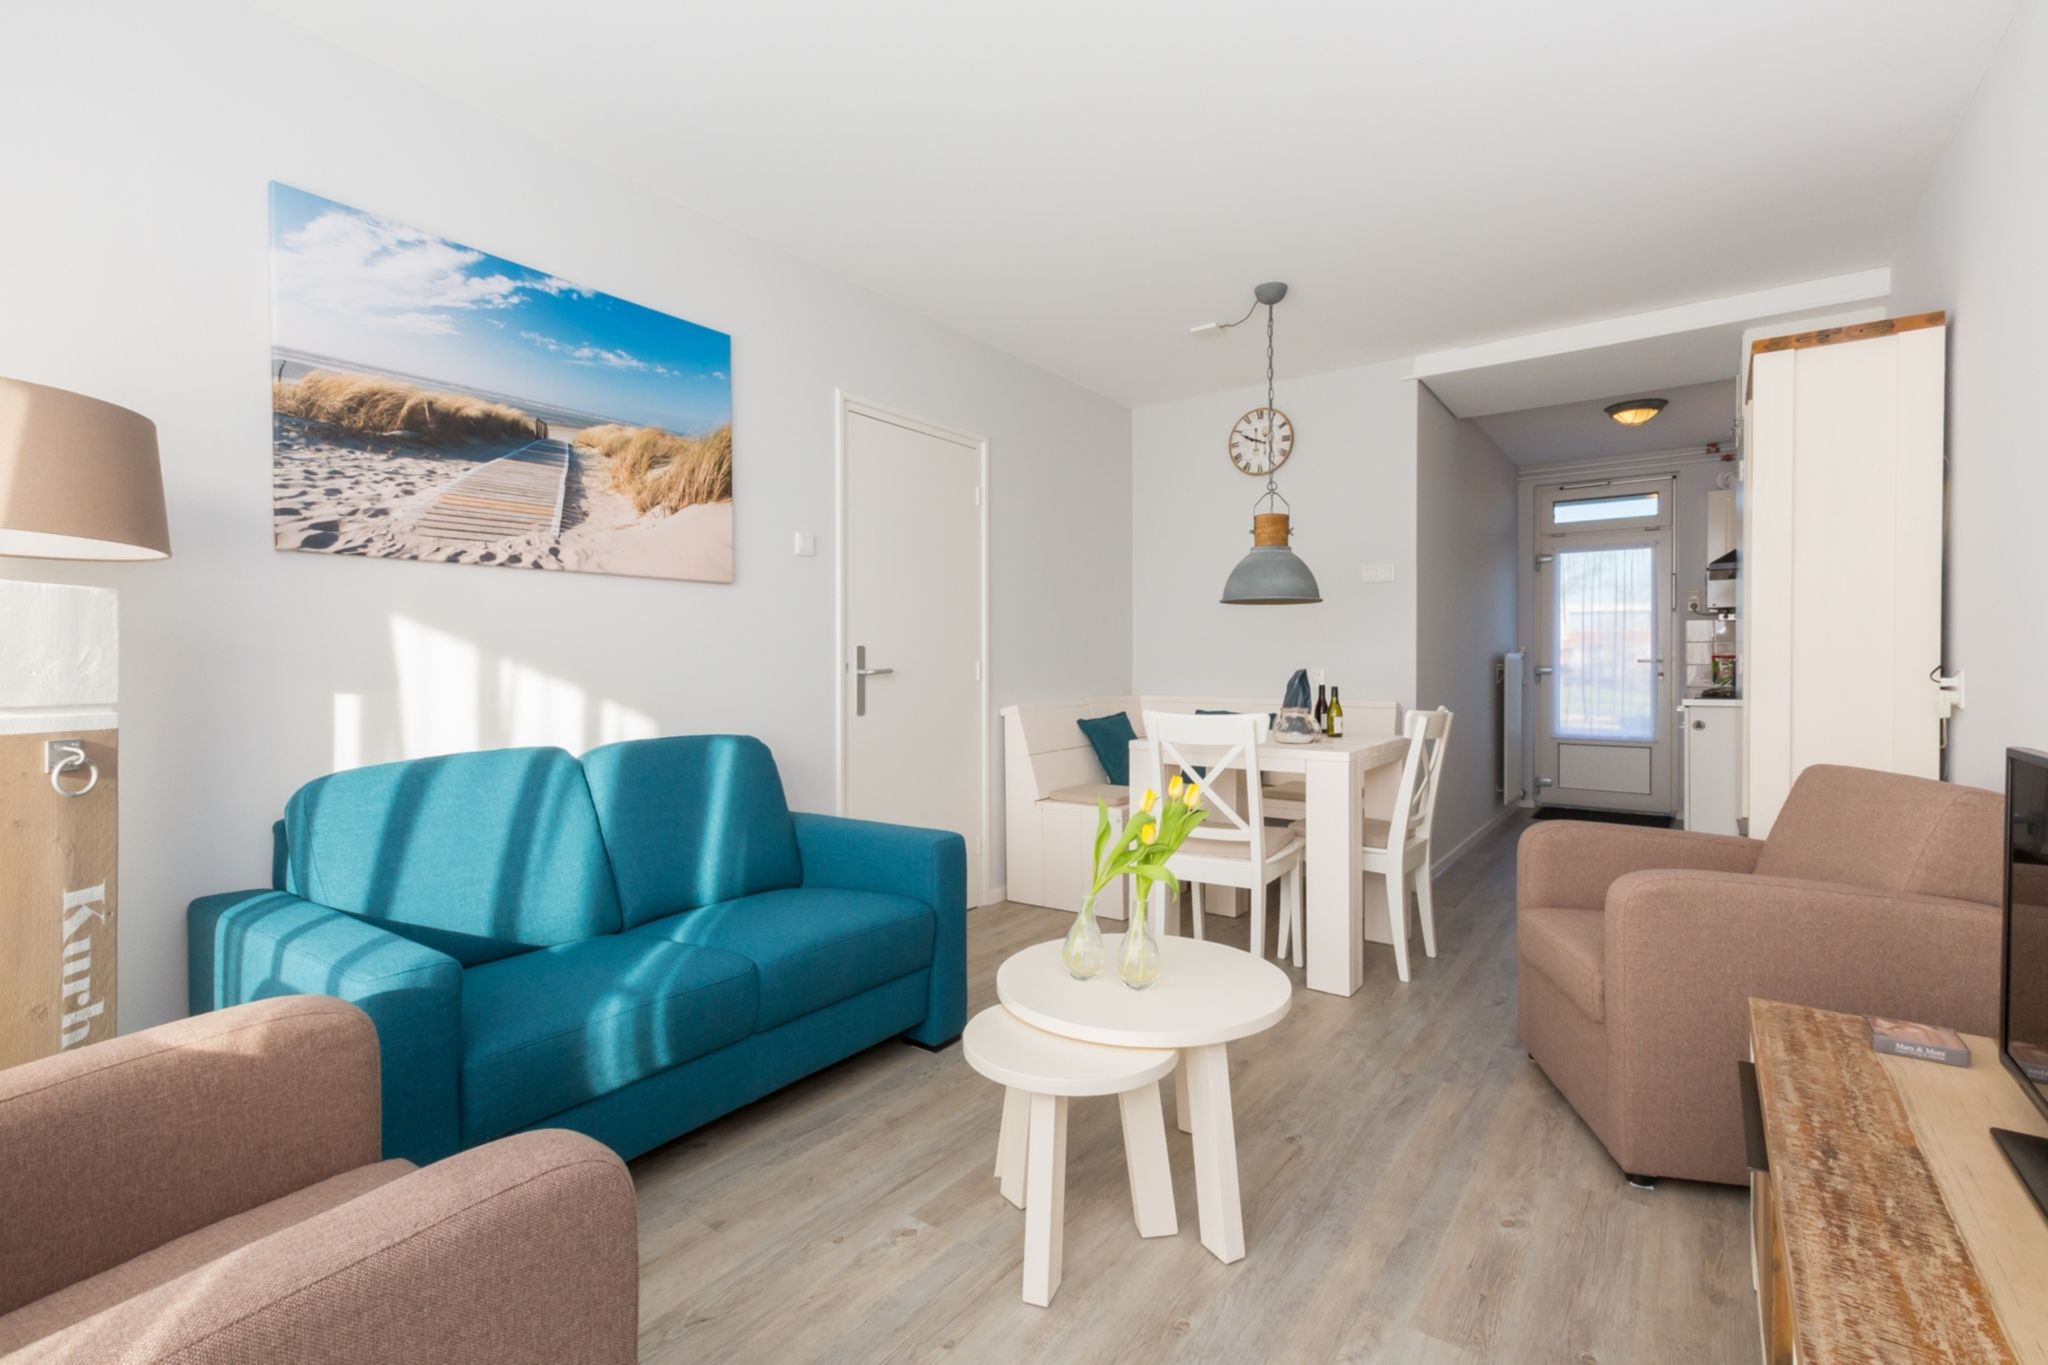 Knus appartement in Zoutelande direct aan het strand